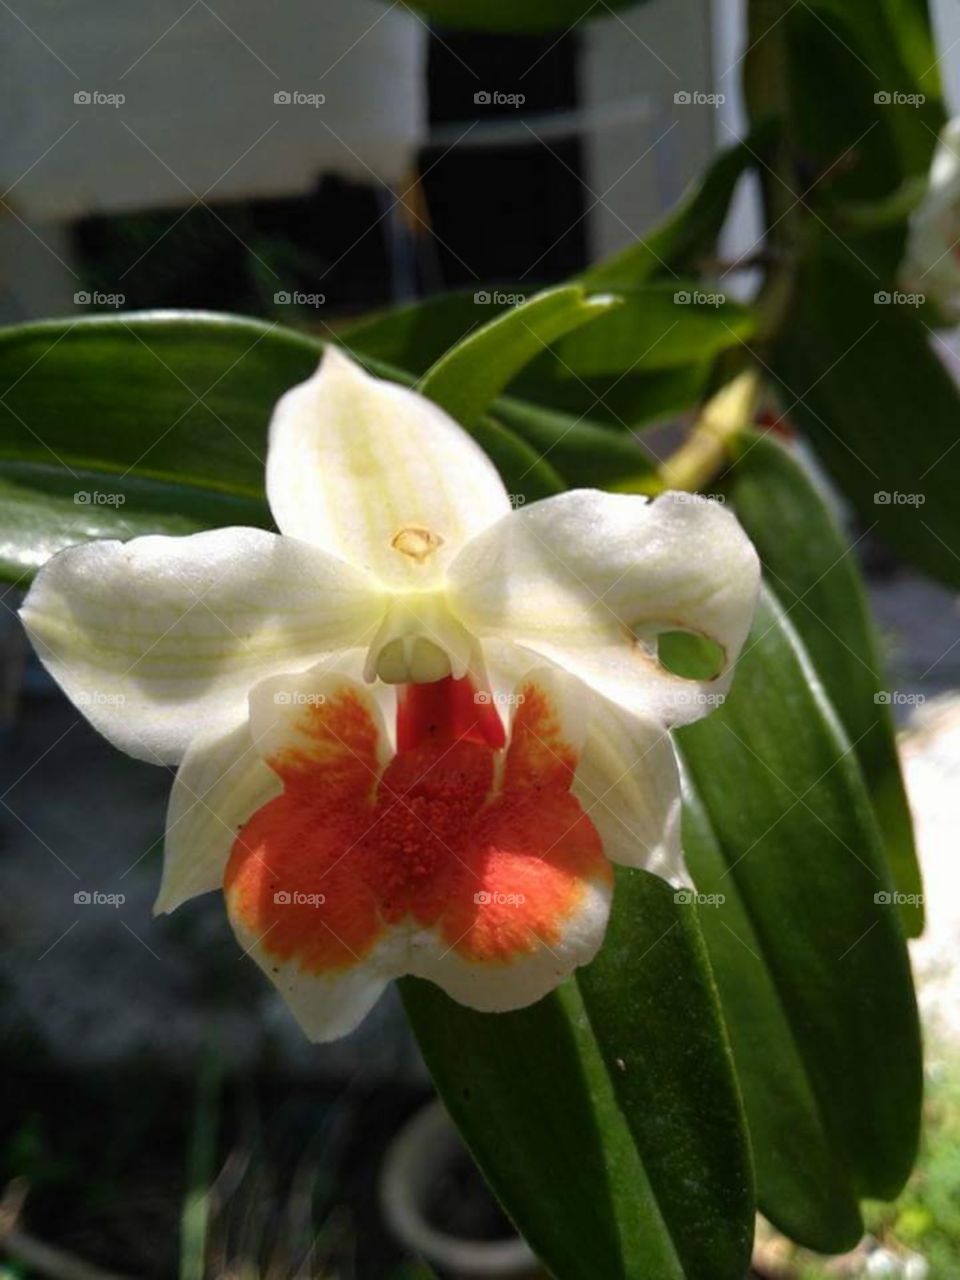 malaysia orkid